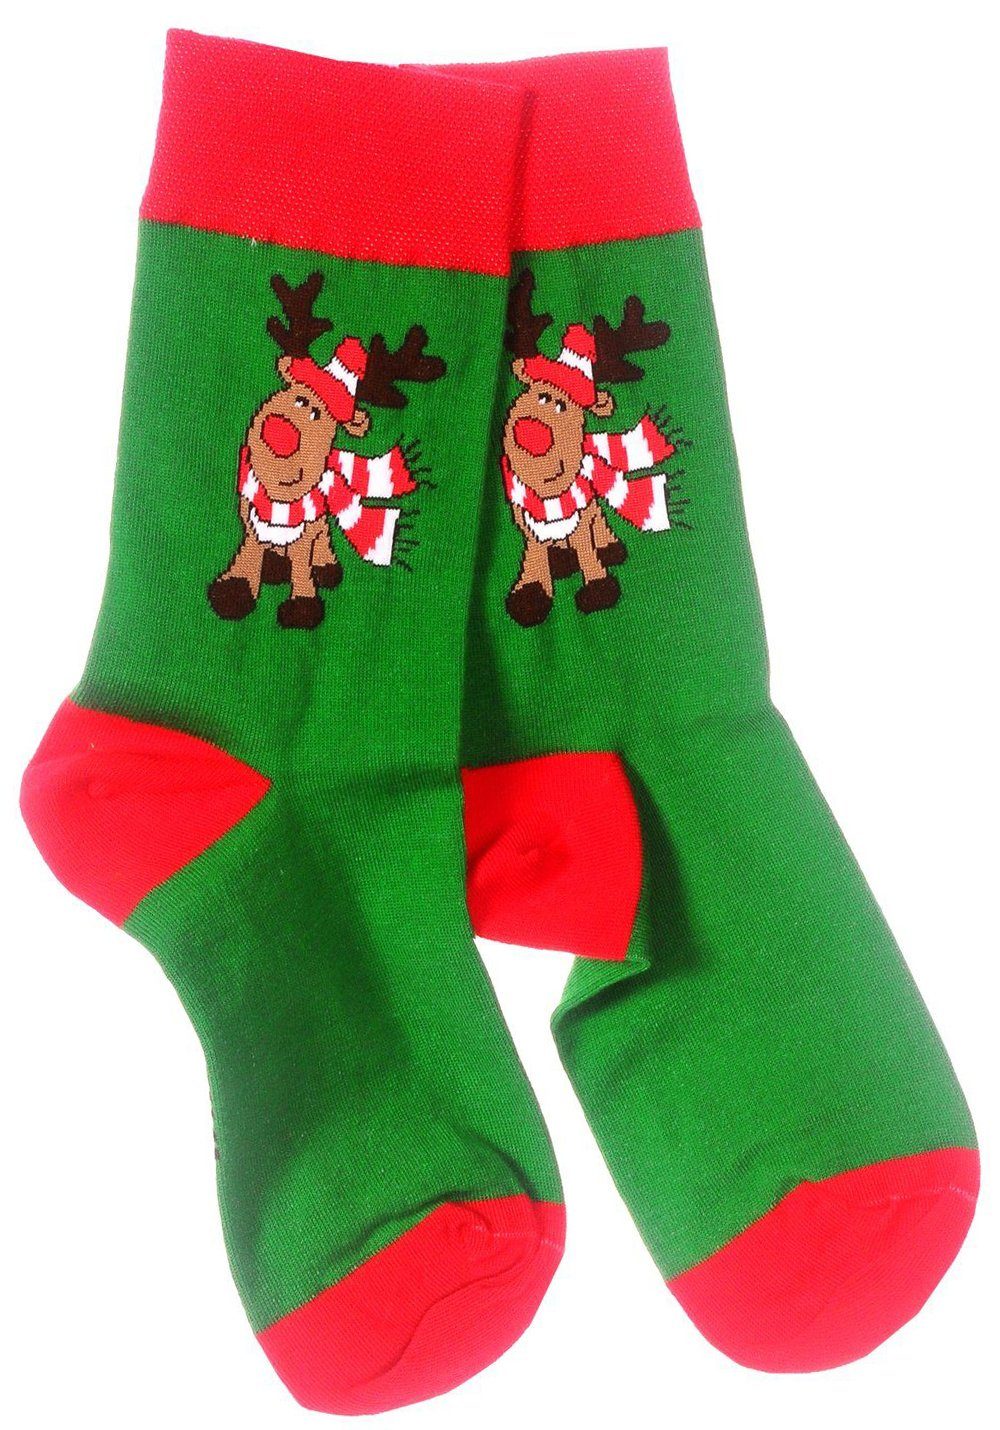 Martinex Socken Freizeitsocken 1 43 46 die ganze 35 für festlich, Paar weihnachtlich, 39 42 Strümpfe 38 Familie Weihnachtssocken, Socken